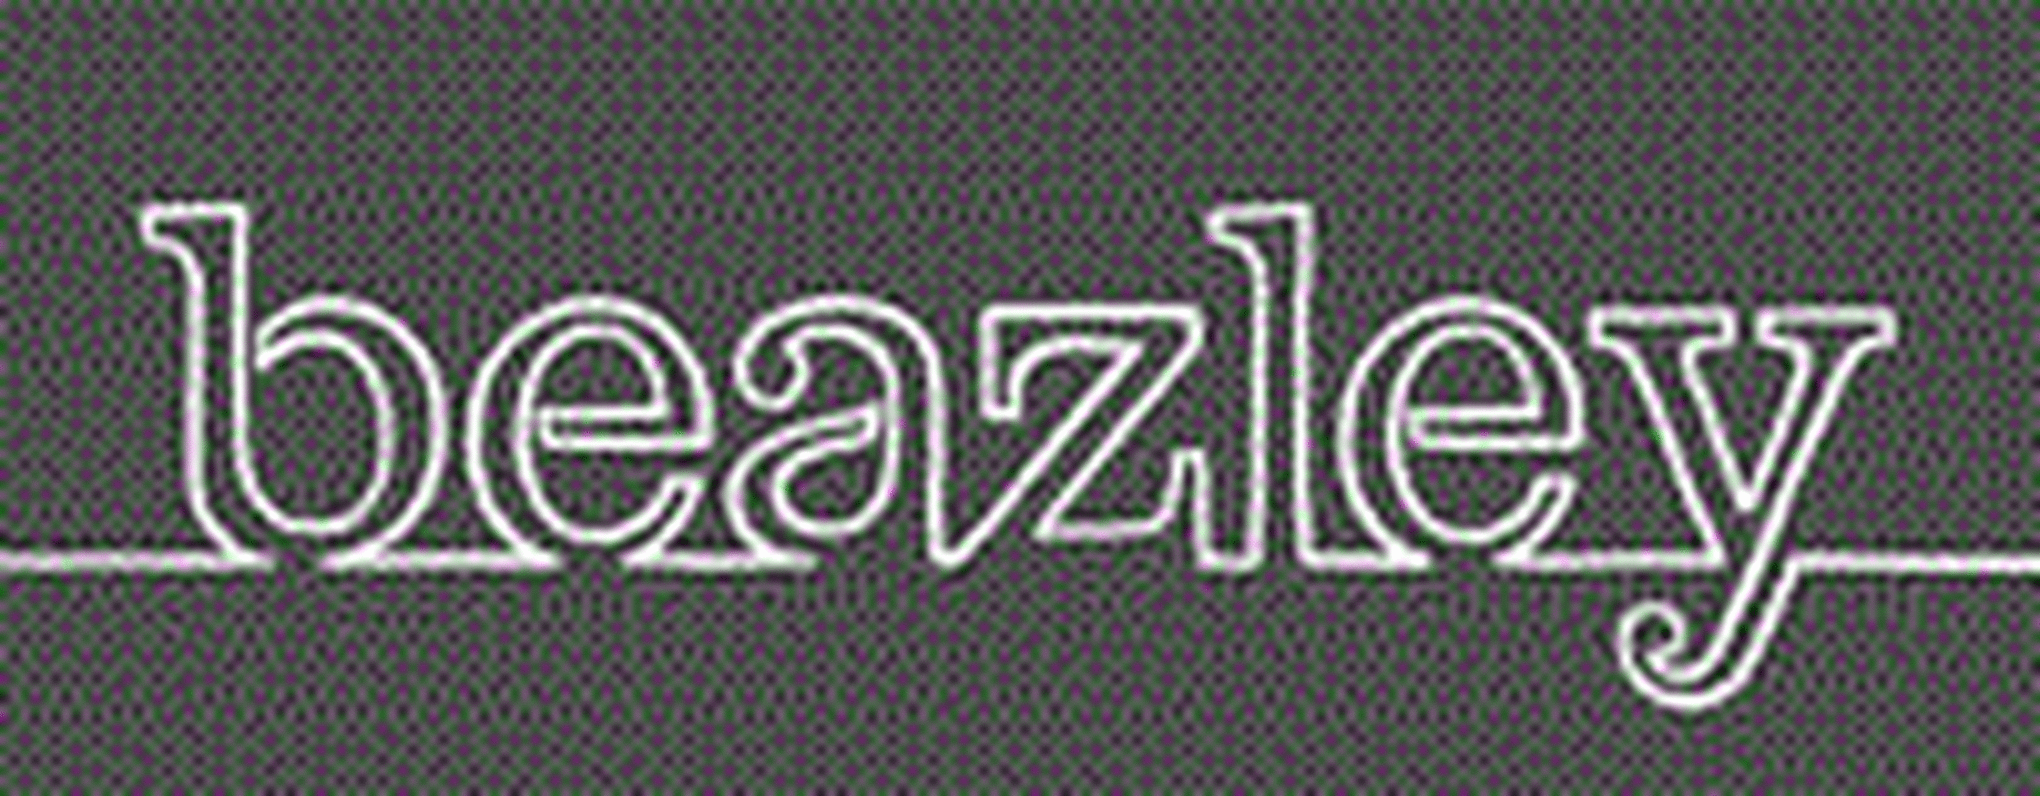 Beazley Third Party Logo Web